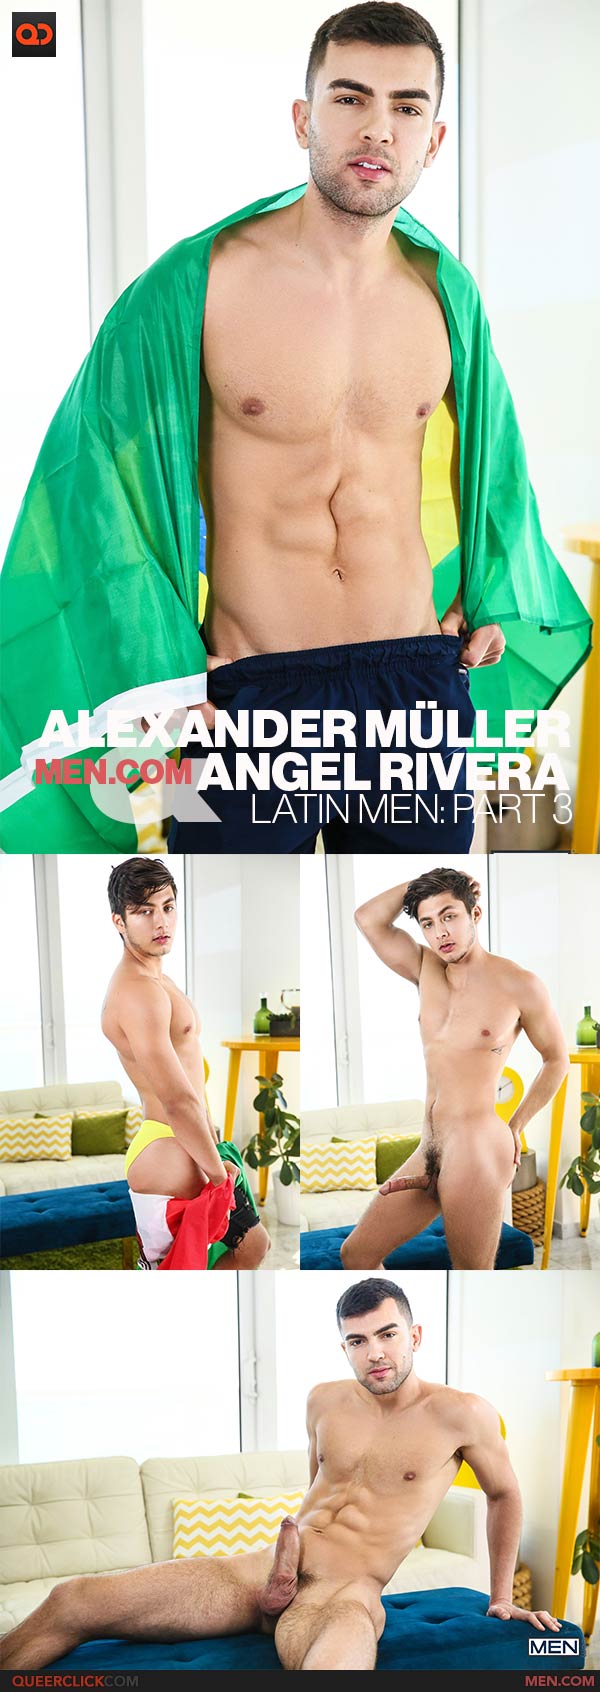 Men.com: Angel Rivera and Alexander Müller